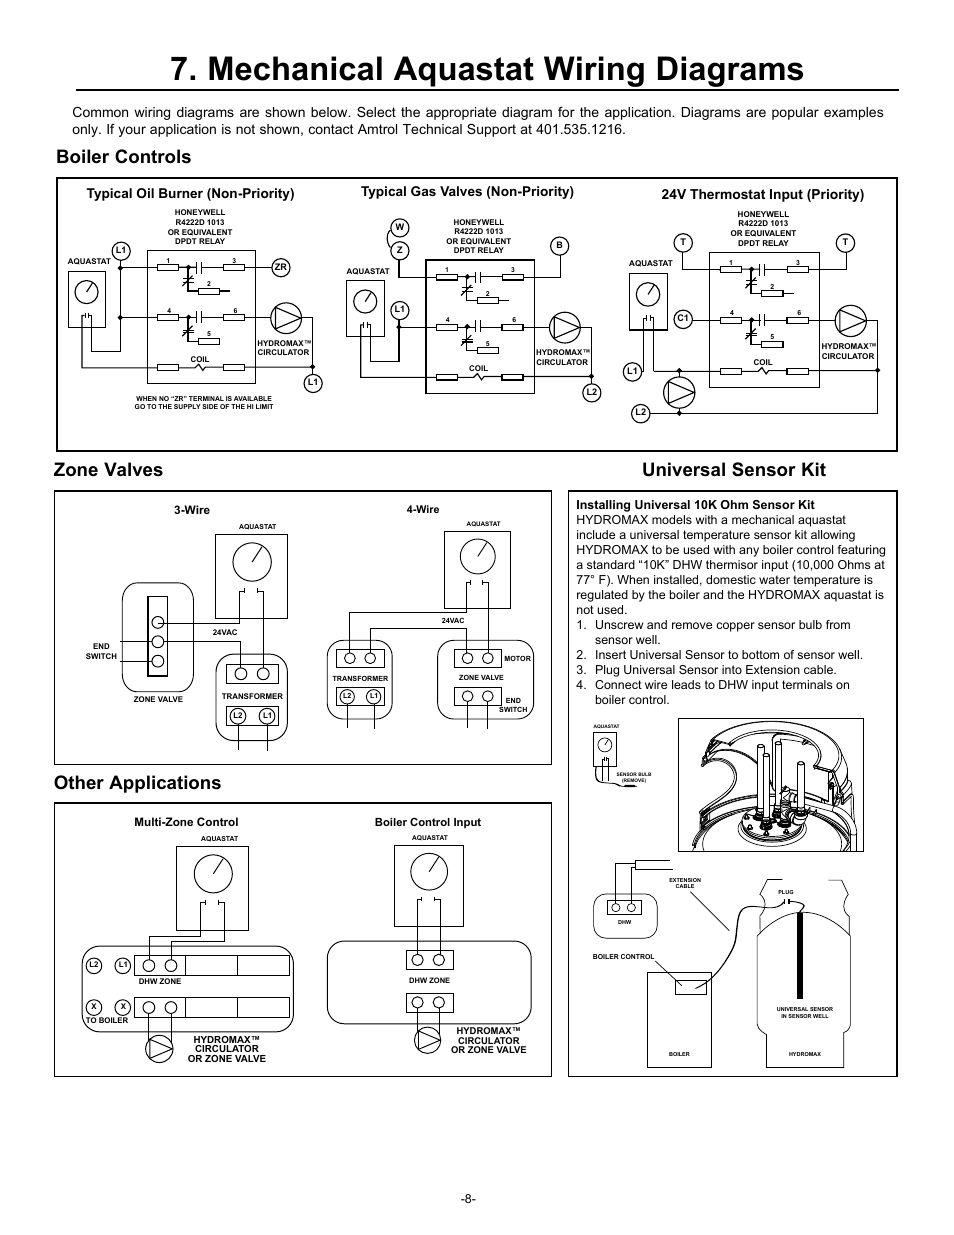 amtrol wiring diagram